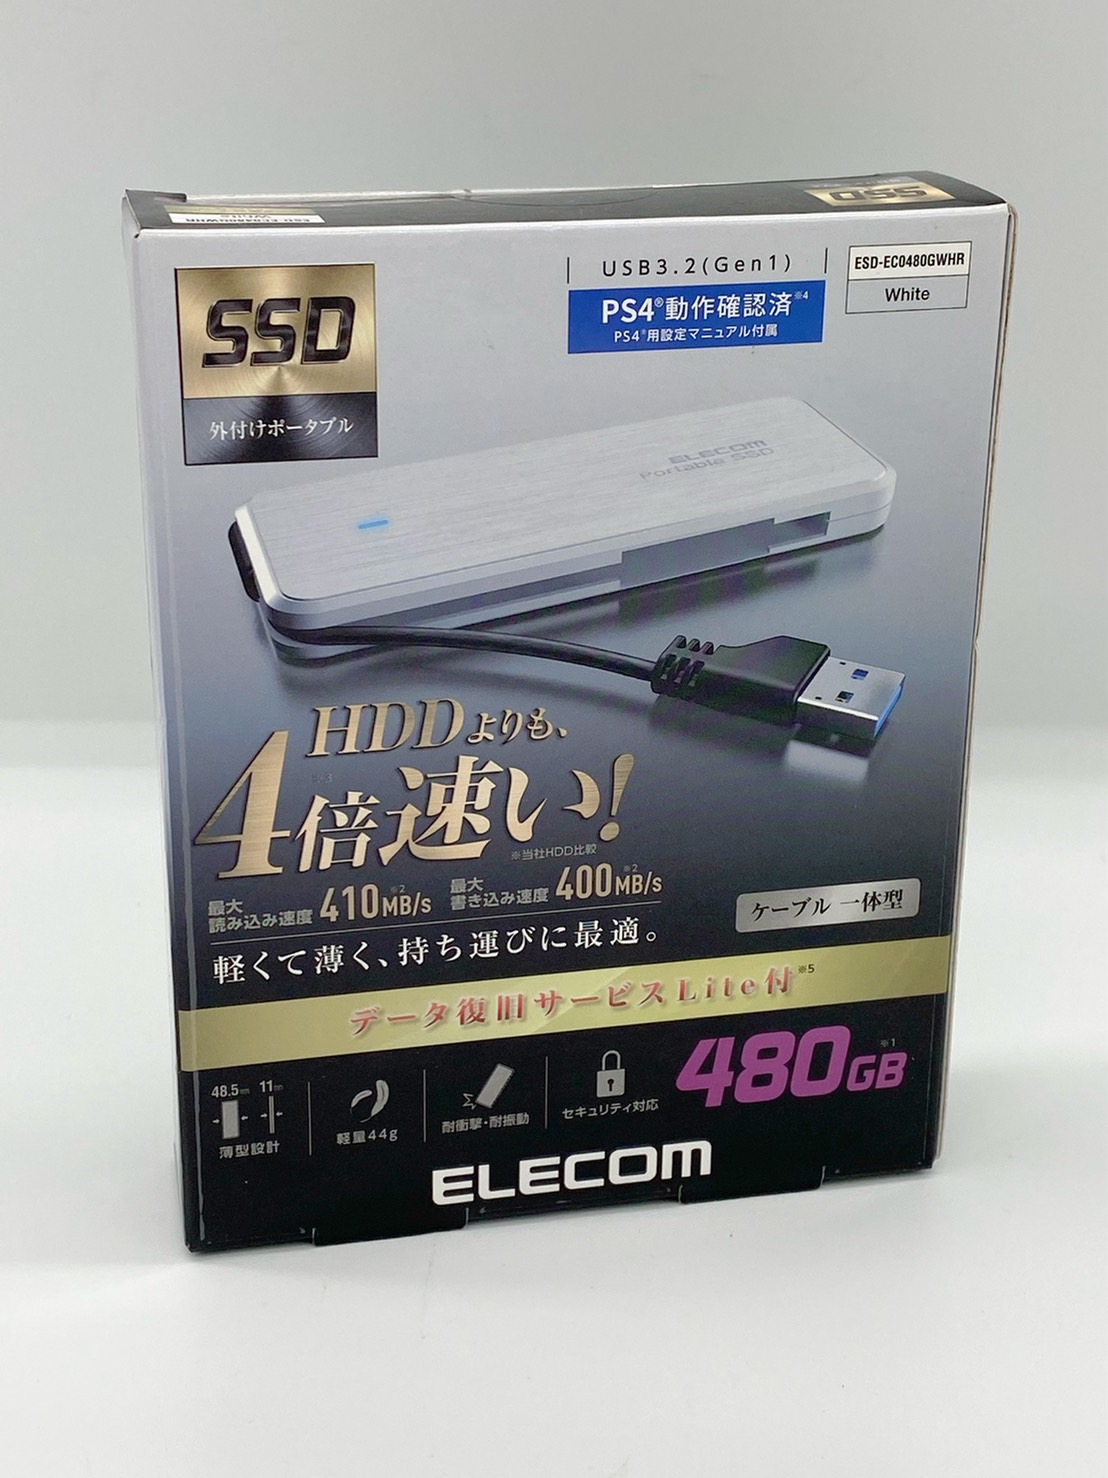 割引 送料無料 エレコム ポータブルSSD 480GB USB3.2 Gen1 対応 北海道 データ復旧サービスLite付 離島配送不可 ケーブル収納 沖縄 日時指定 ホワイト ESD-EC0480GWHR